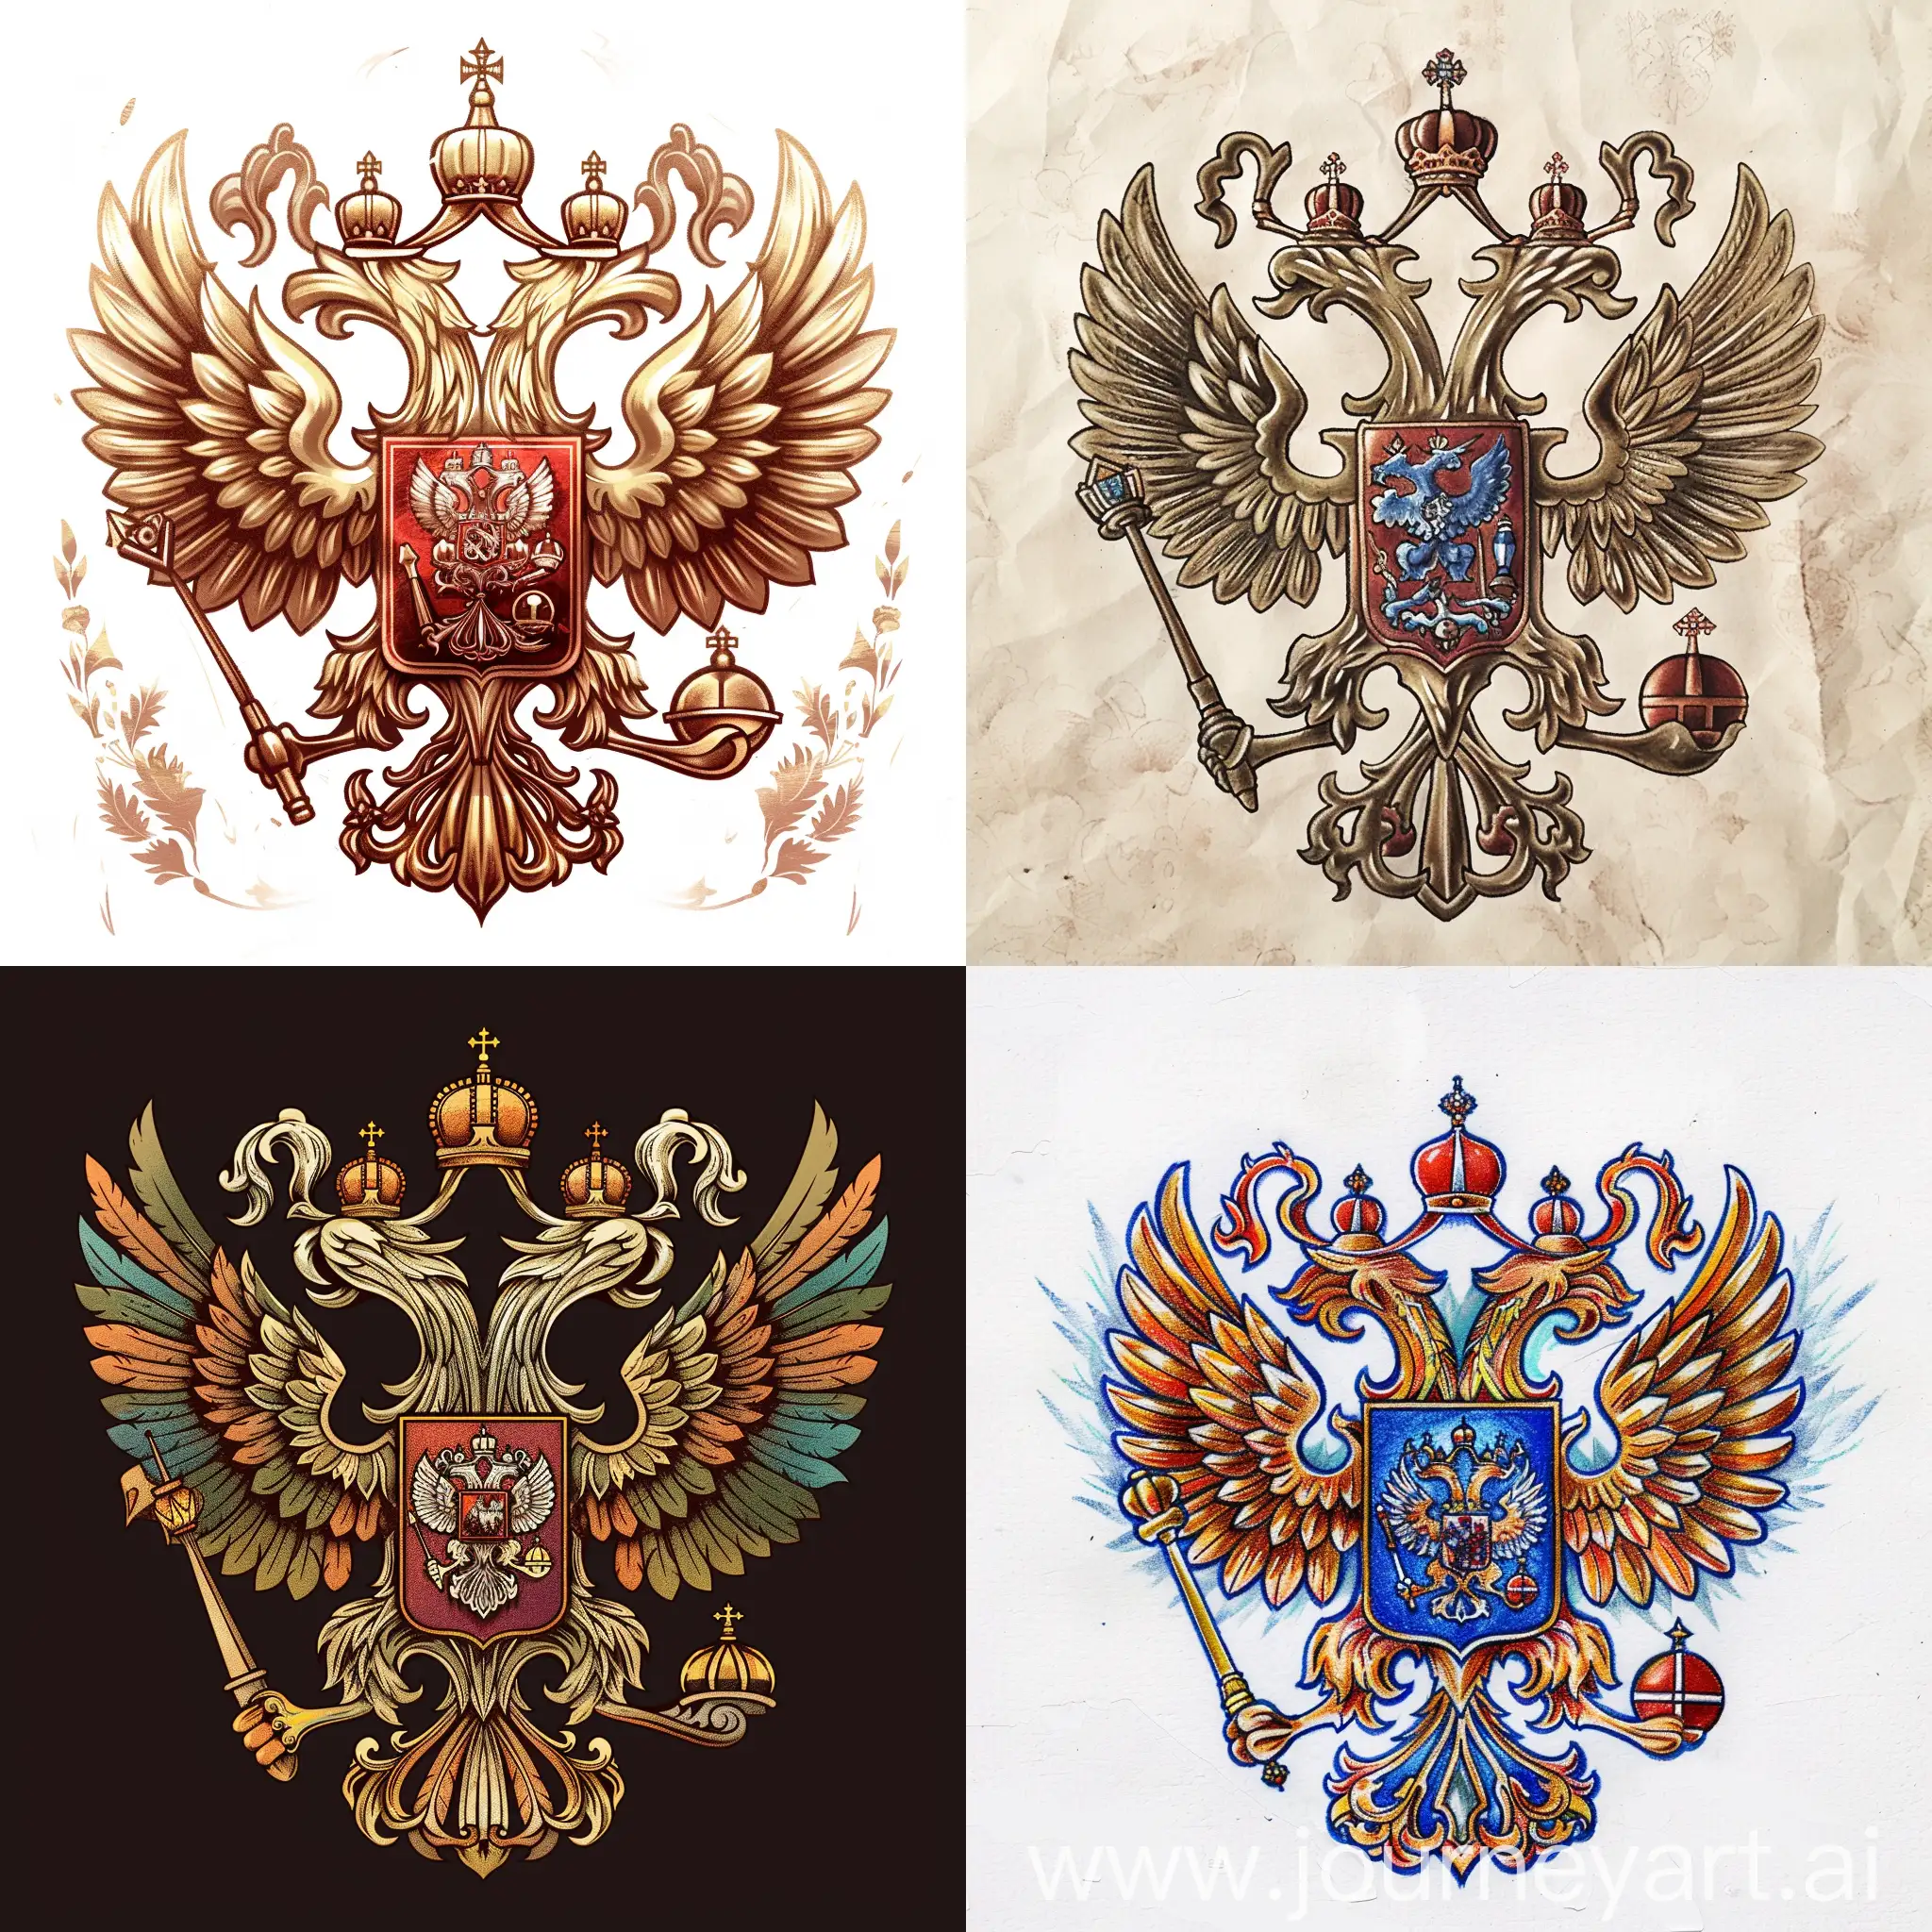 Draw me xumo bir like Russia nationality emblem 